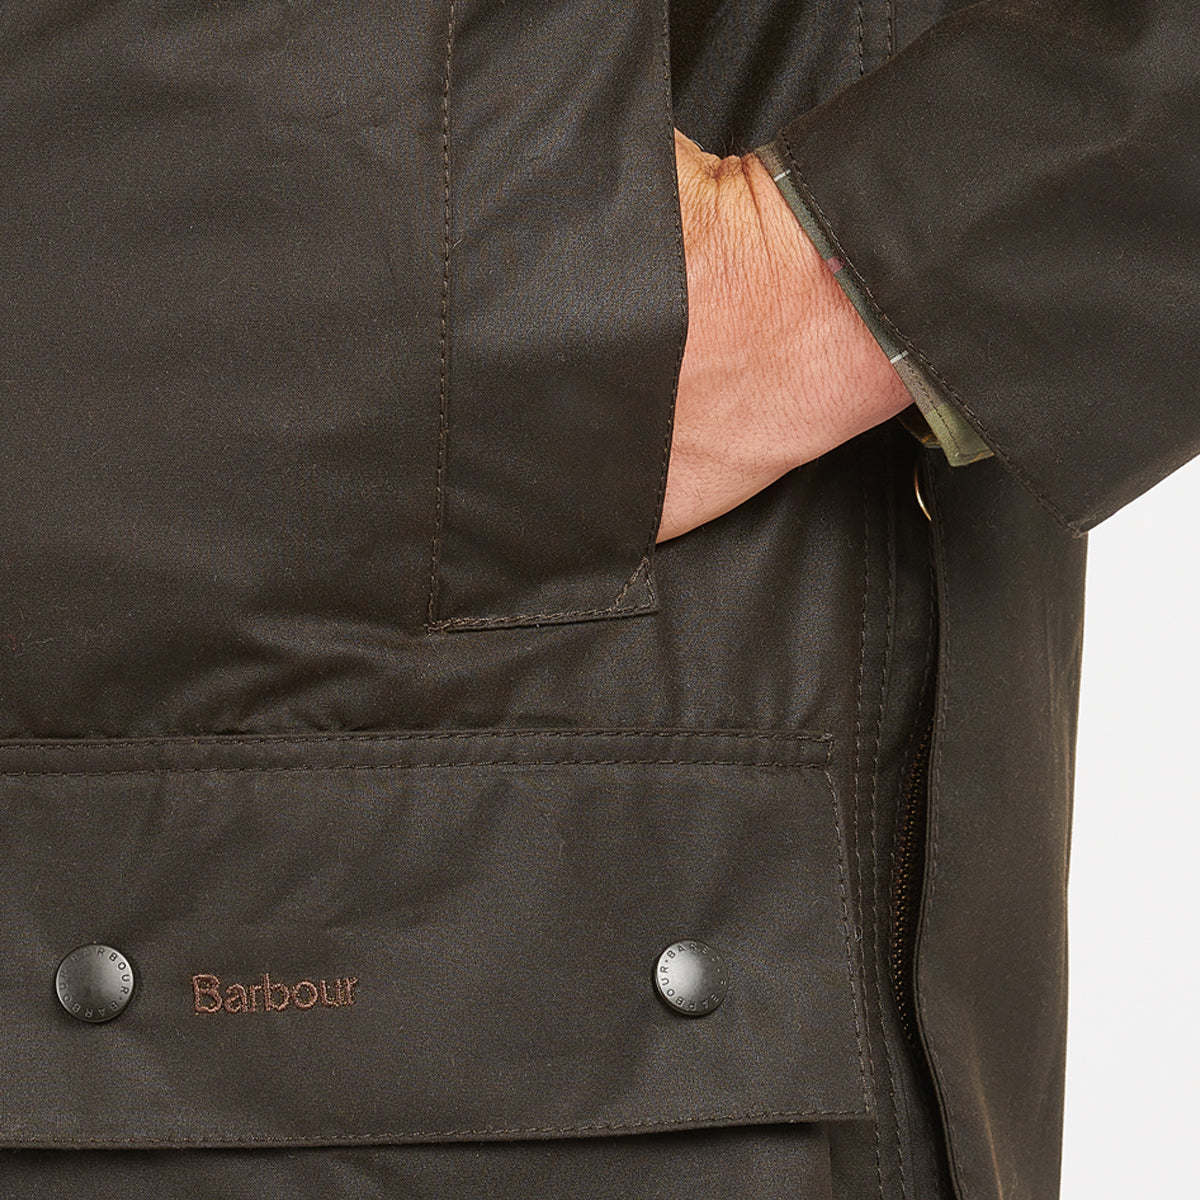 Barbour Men's Classic Beaufort Wax Jacket | Farm House Tack